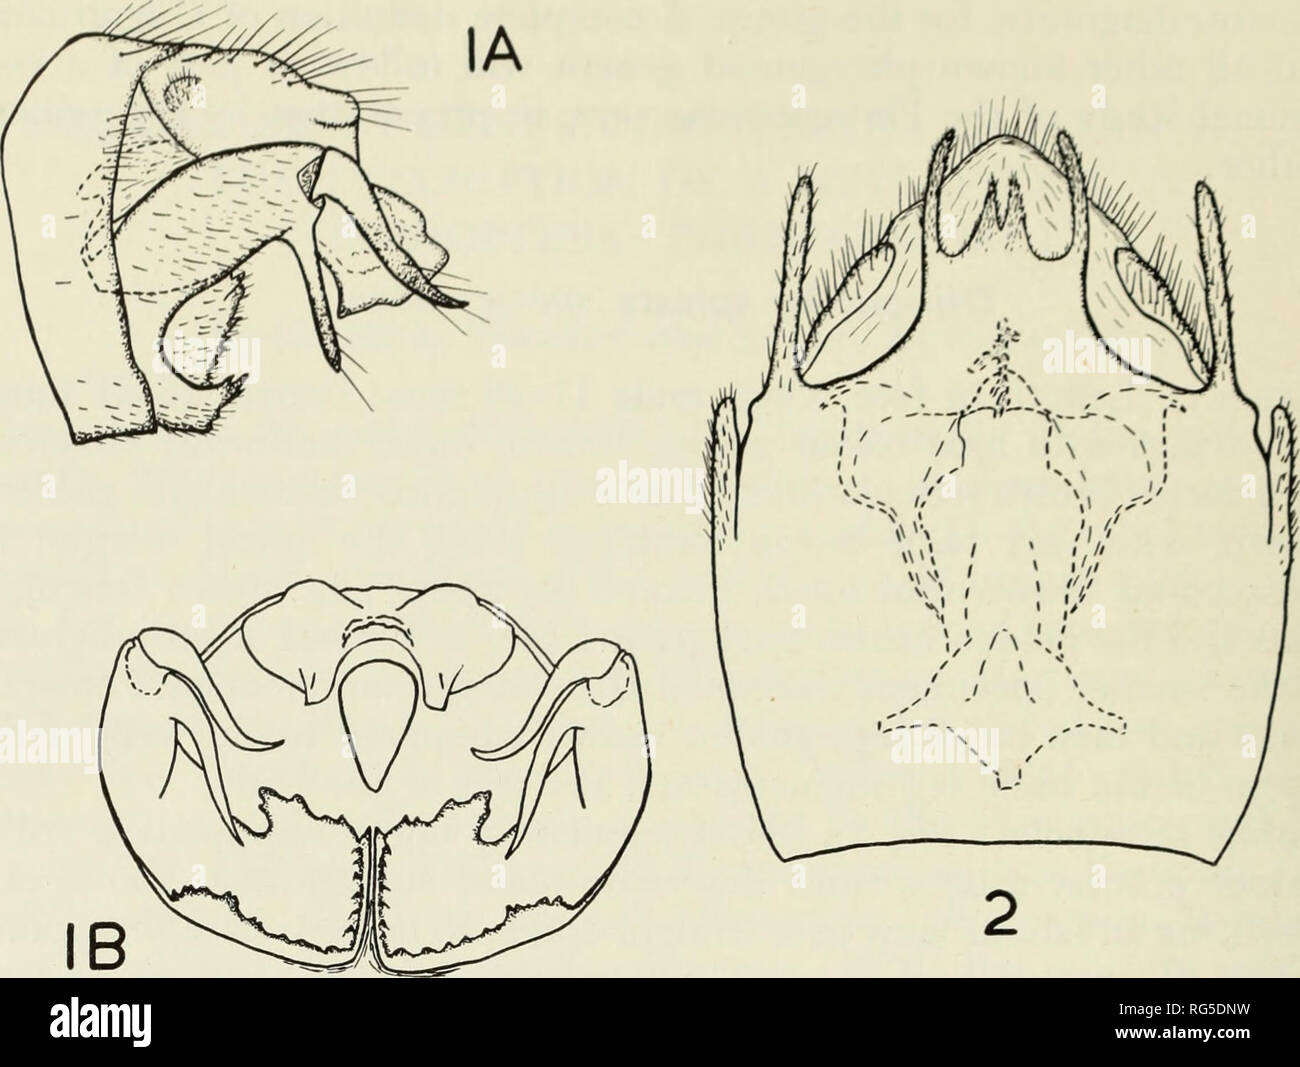 . Il genere caddisfly Oligotricha in Giappone con la descrizione di una nuova specie (tricotteri : Phryganeidae). Caddisflies; Oligotricha; Phryganeidae. H.O.M., Z. E P. CONTRIBUTI lA. Oligotricha spicata sp. nov. Fig. 1, Terminale segmenti addominali del maschio; lA, vista laterale; IB, vista caudale. Fig. 2, Terminale segmenti addominali della femmina, vista ventrale. Sapporo, Giappone. Tutti i campioni sono stati raccolti dal dottor Asahina e o vengono riposte o in buste di carta. Paratypes: Shiga-Kogen, Honshu, Giappone: 1 9 , Giugno 8, 1955; 1 6 , il 17 giugno 1955. Oze, Honshu, Giappone: 1 9 , Luglio 16, 1935; 2s S ,29 9 , Luglio Foto Stock